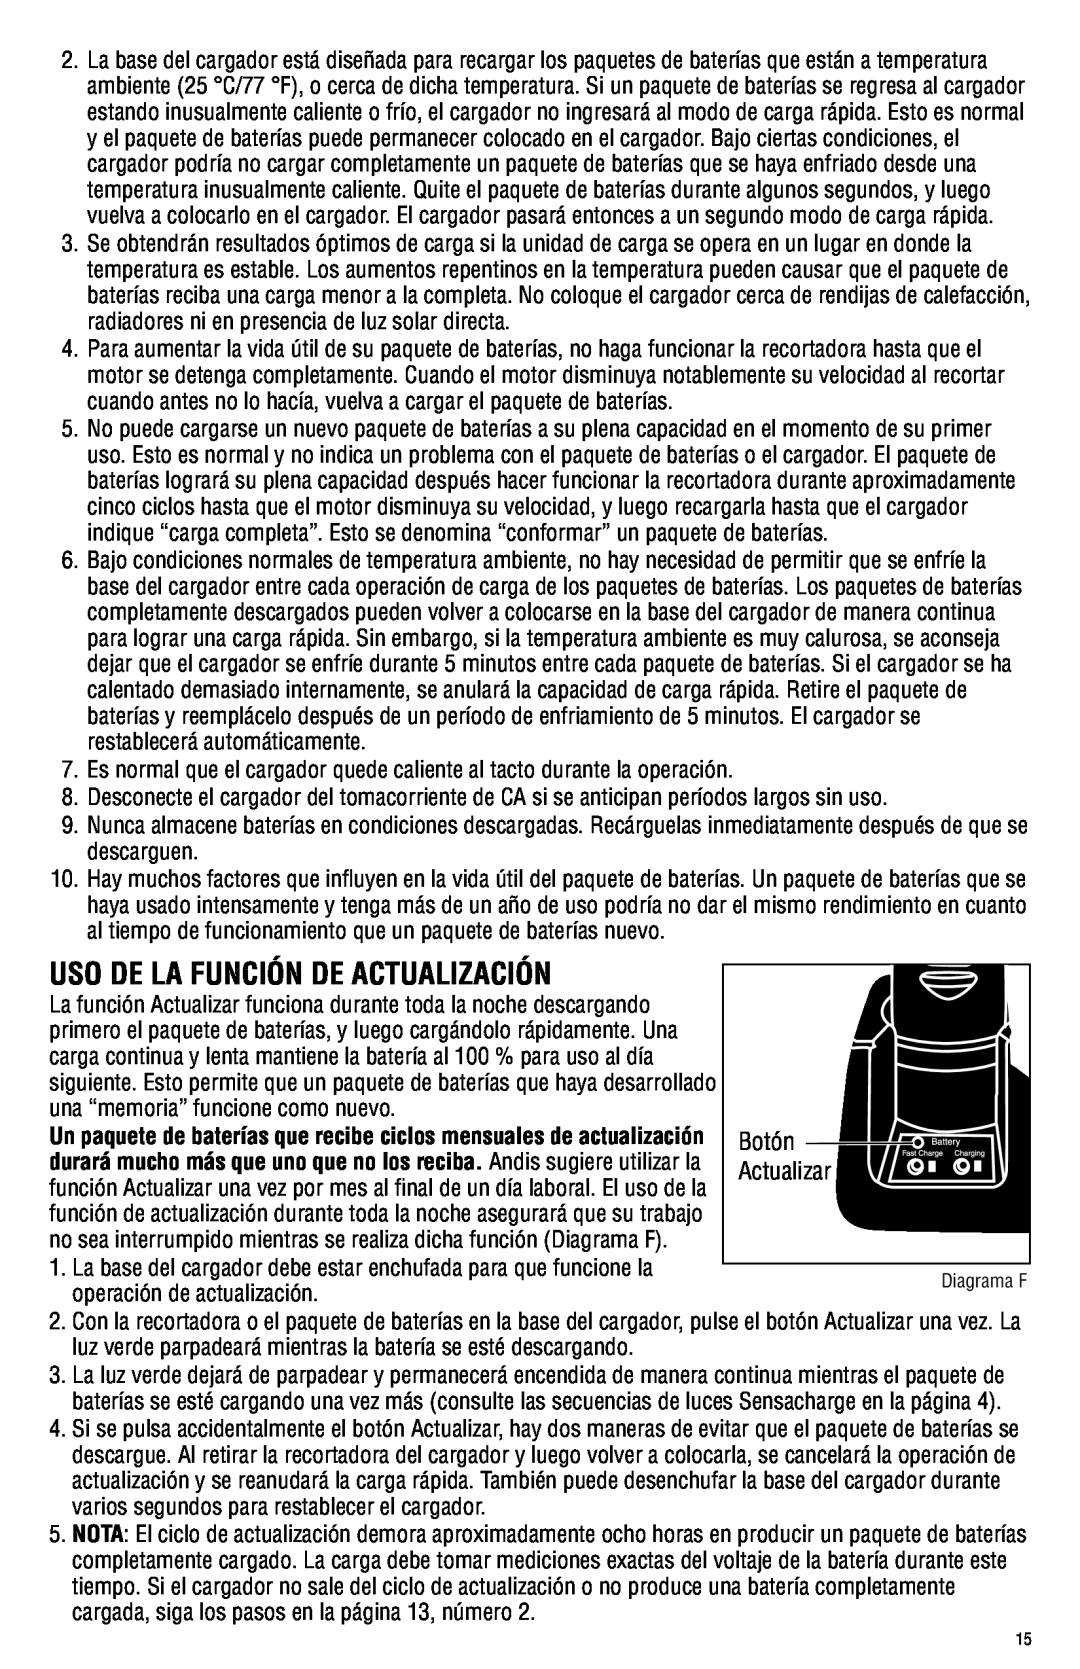 Andis Company AGRC manual Uso De La Función De Actualización, Botón Actualizar 